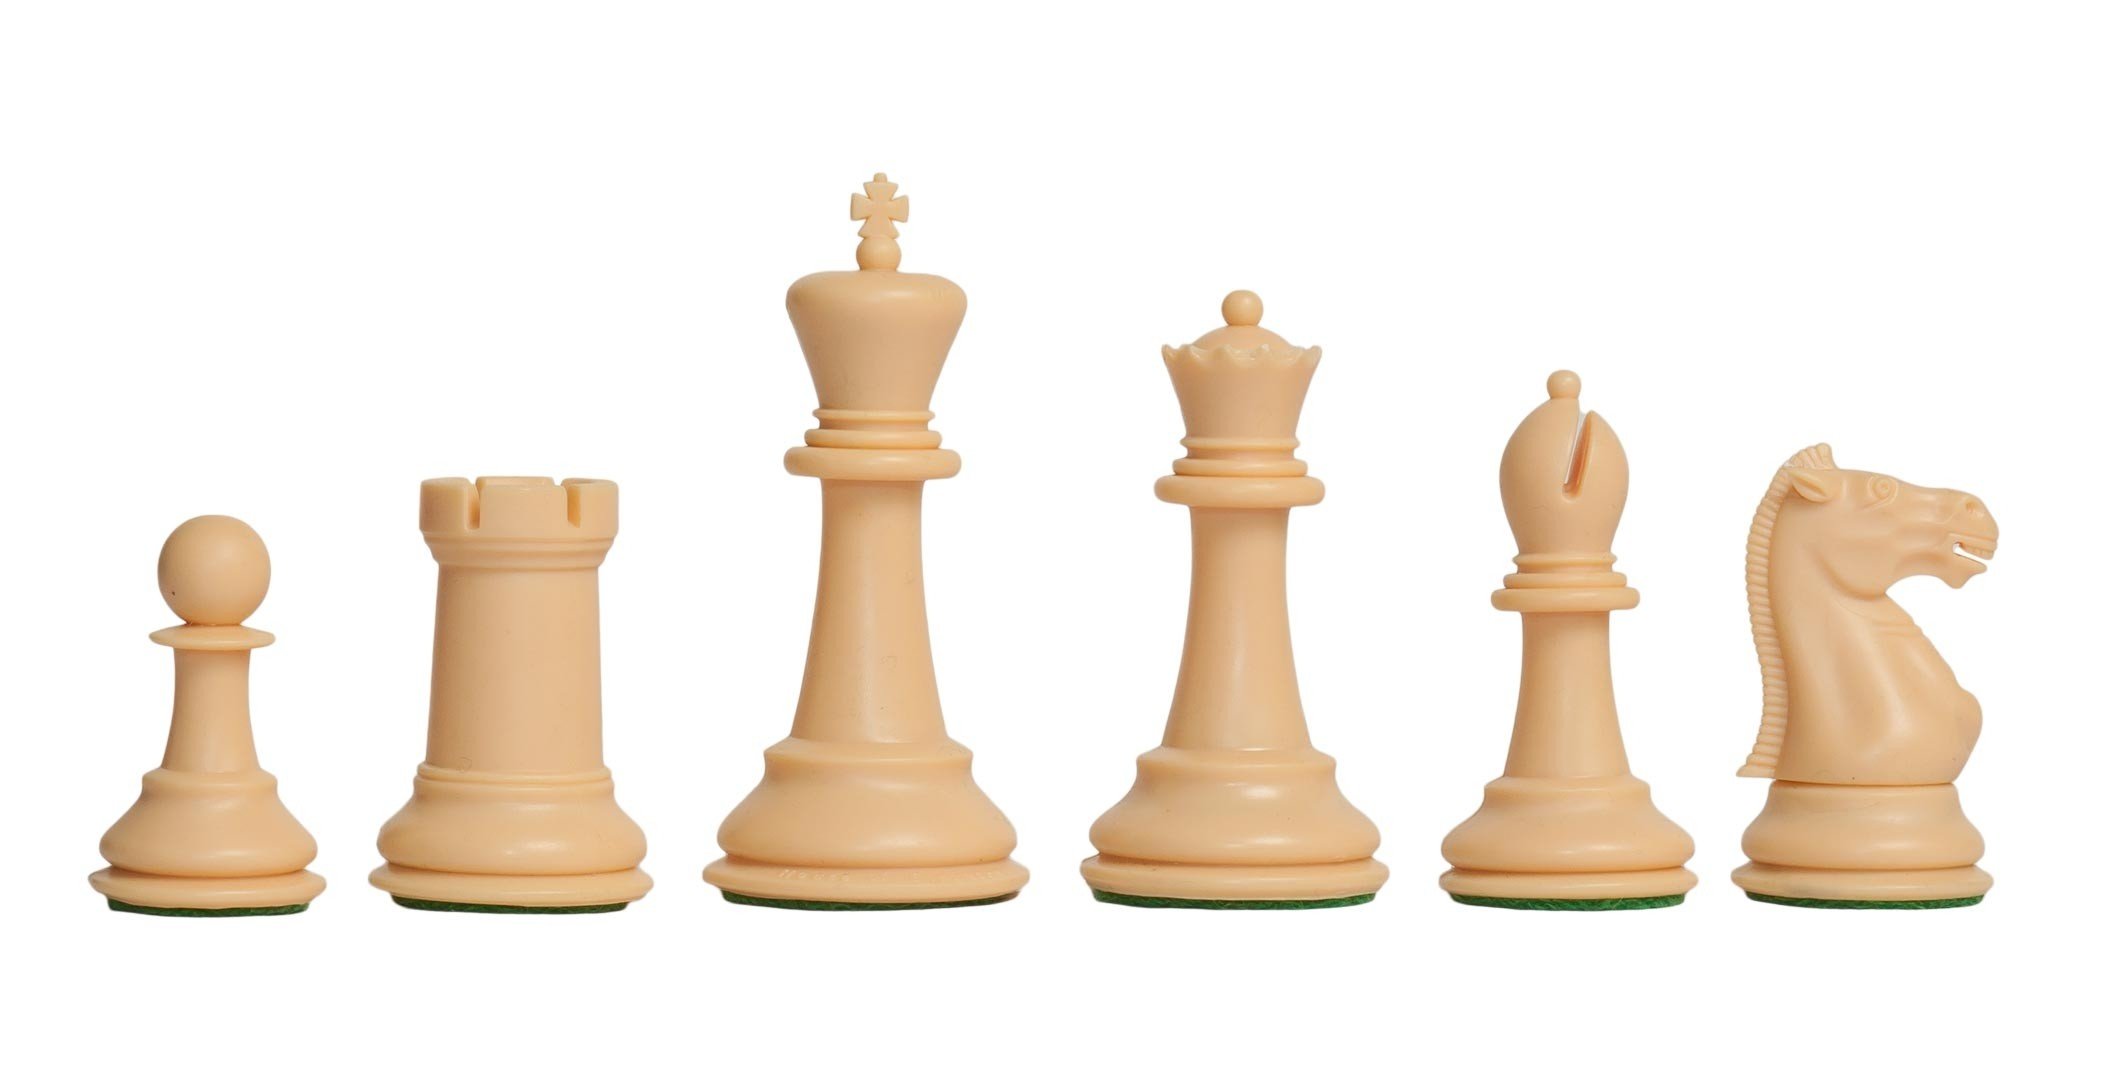 шахматные фигуры и их названия картинки